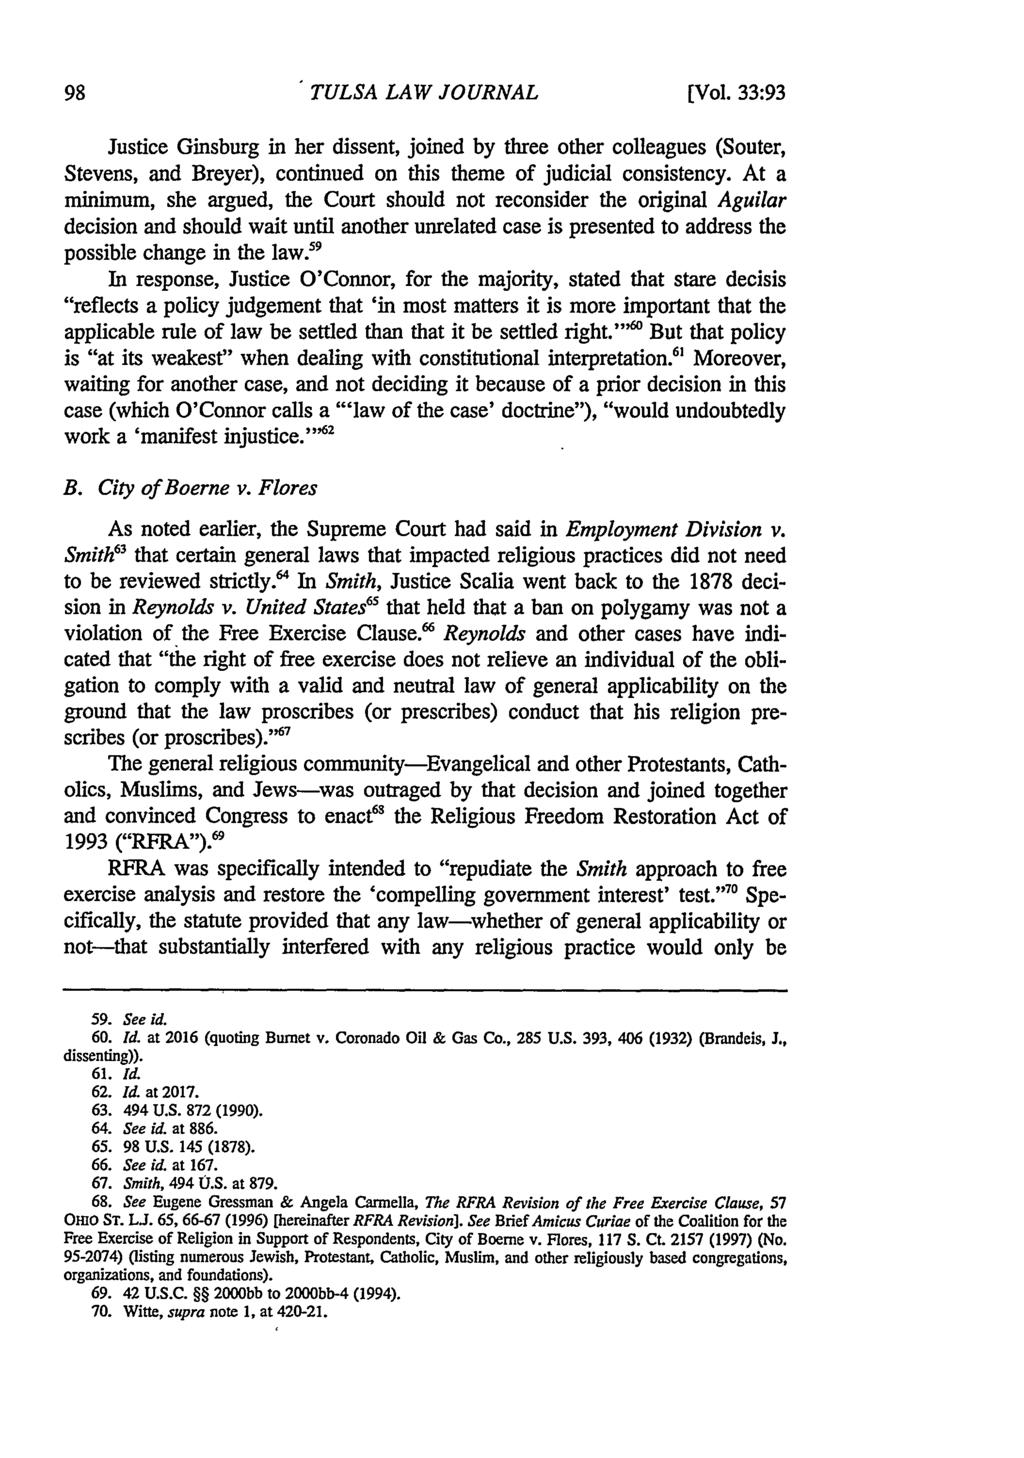 Tulsa Law Review, Vol. 33 [1997], Iss. 1, Art. 8 TULSA LAW JOURNAL (Vol.